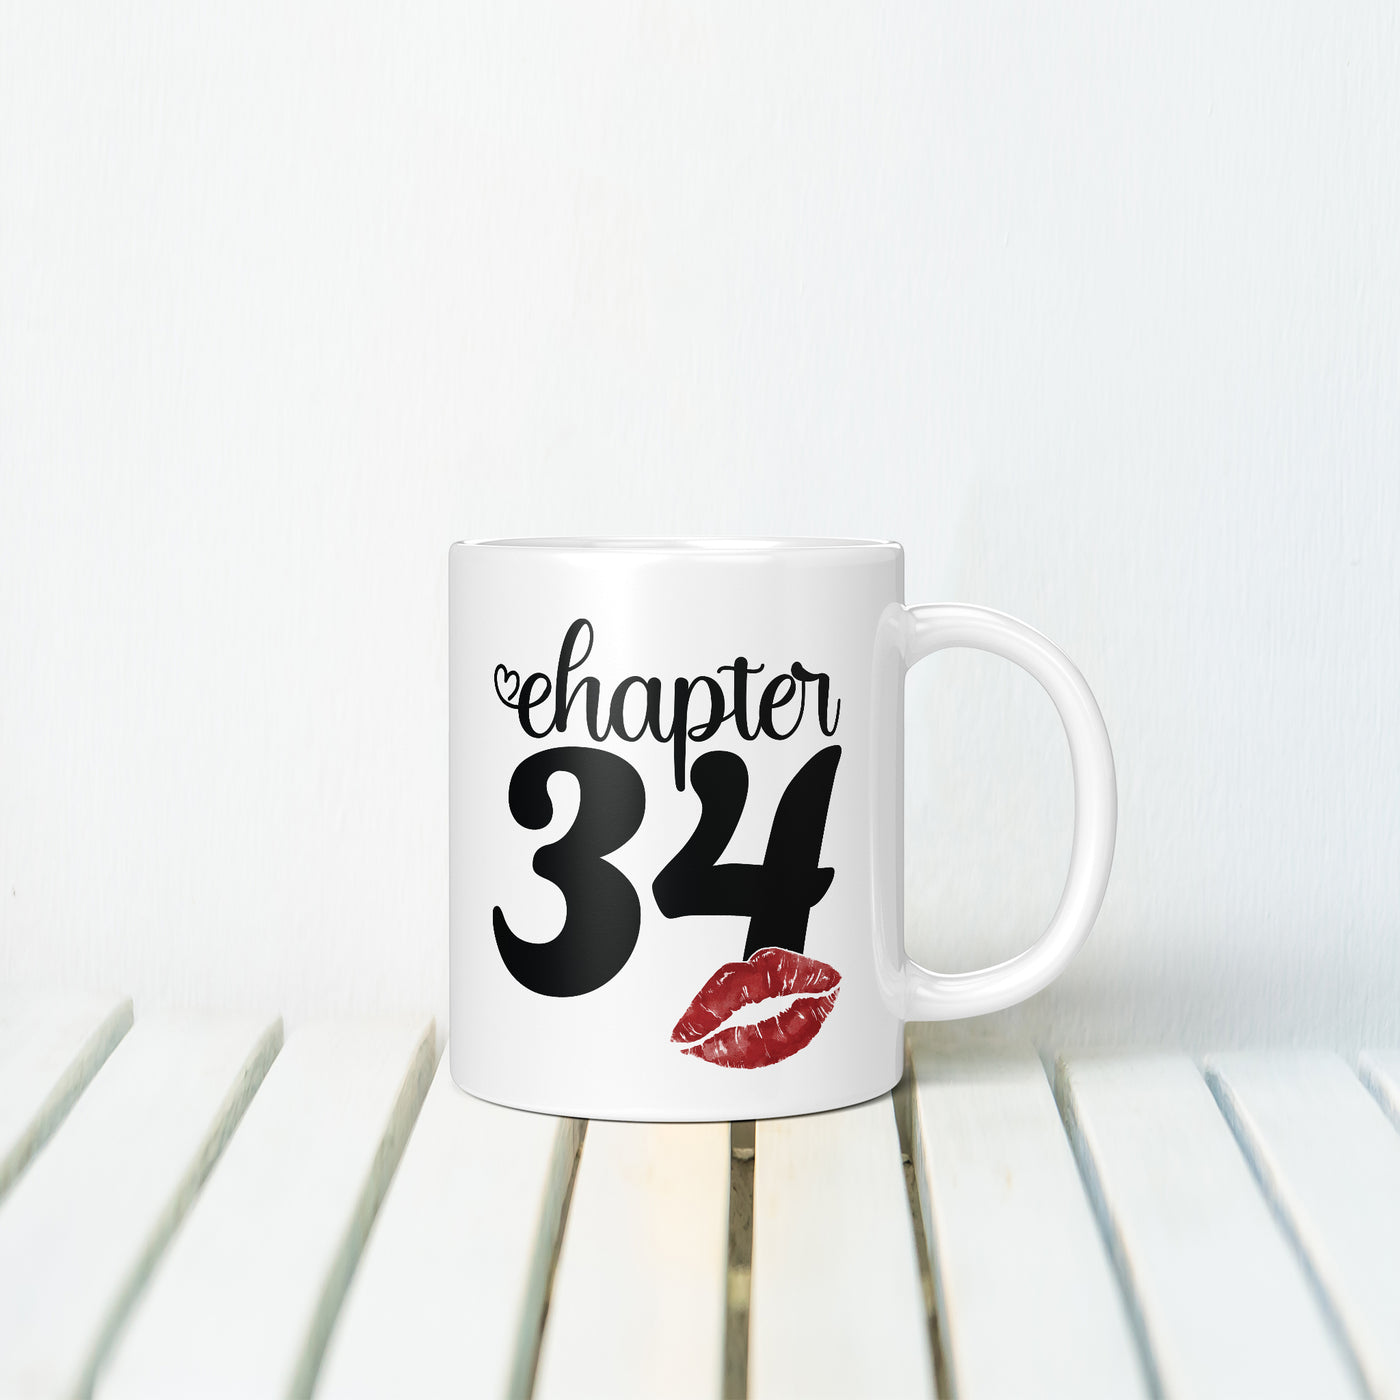 Chapter 34 MUG